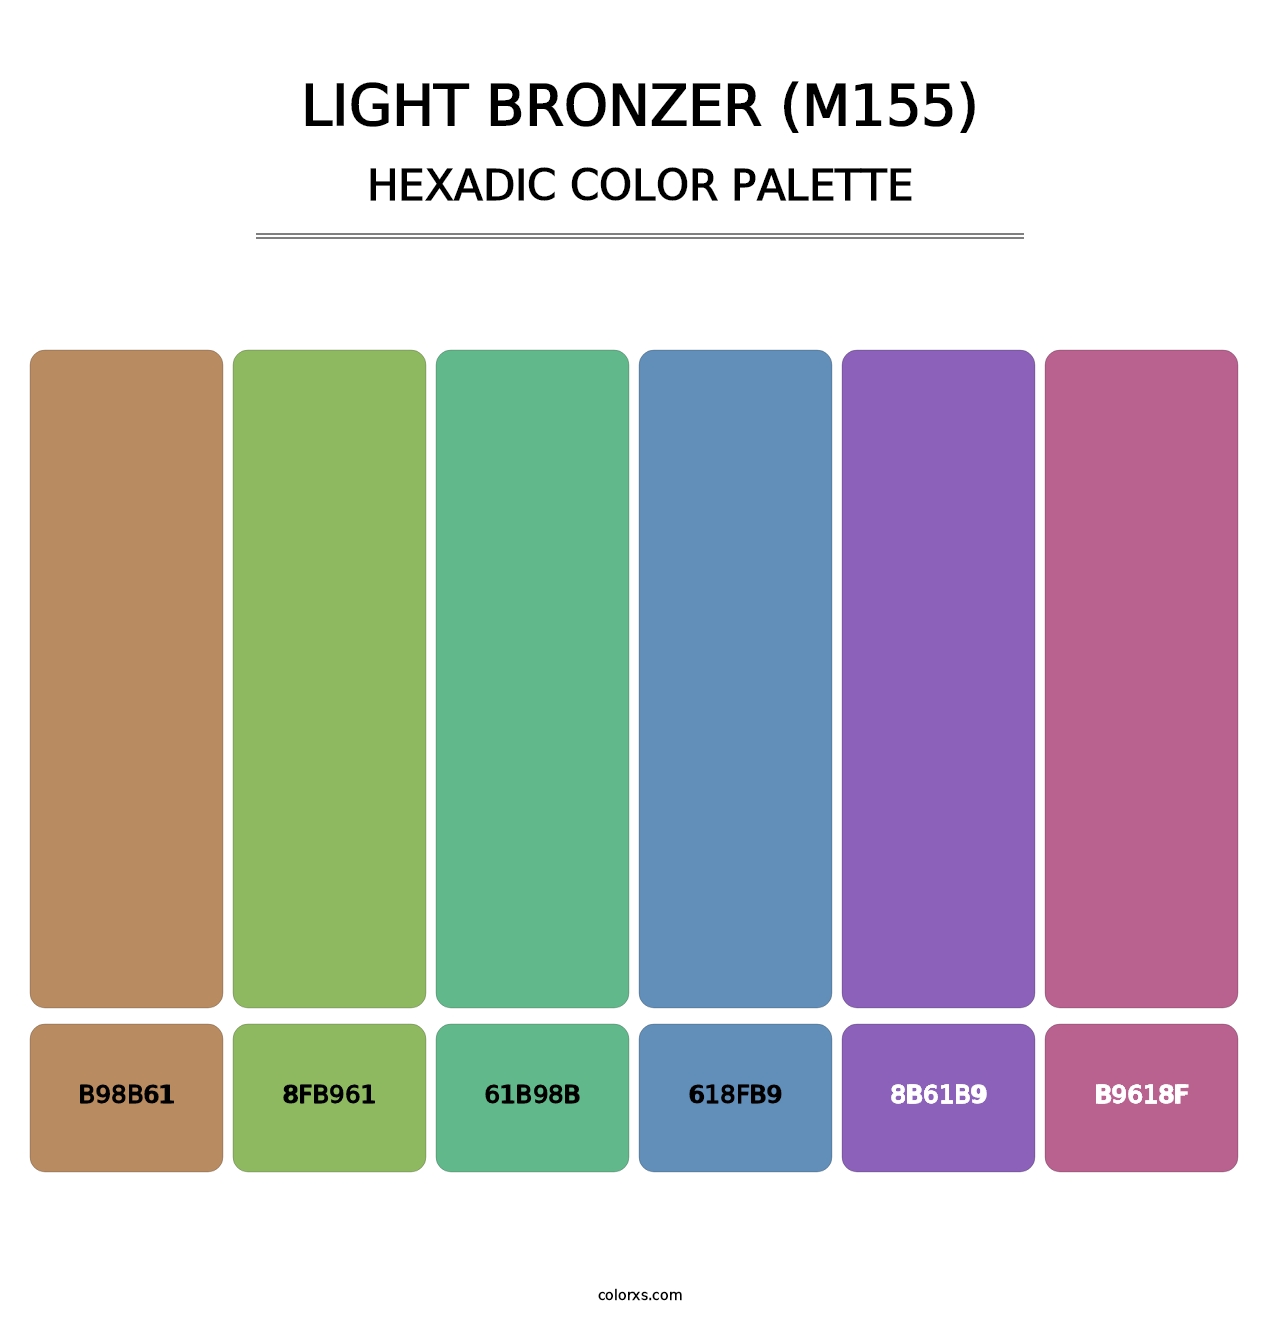 Light Bronzer (M155) - Hexadic Color Palette